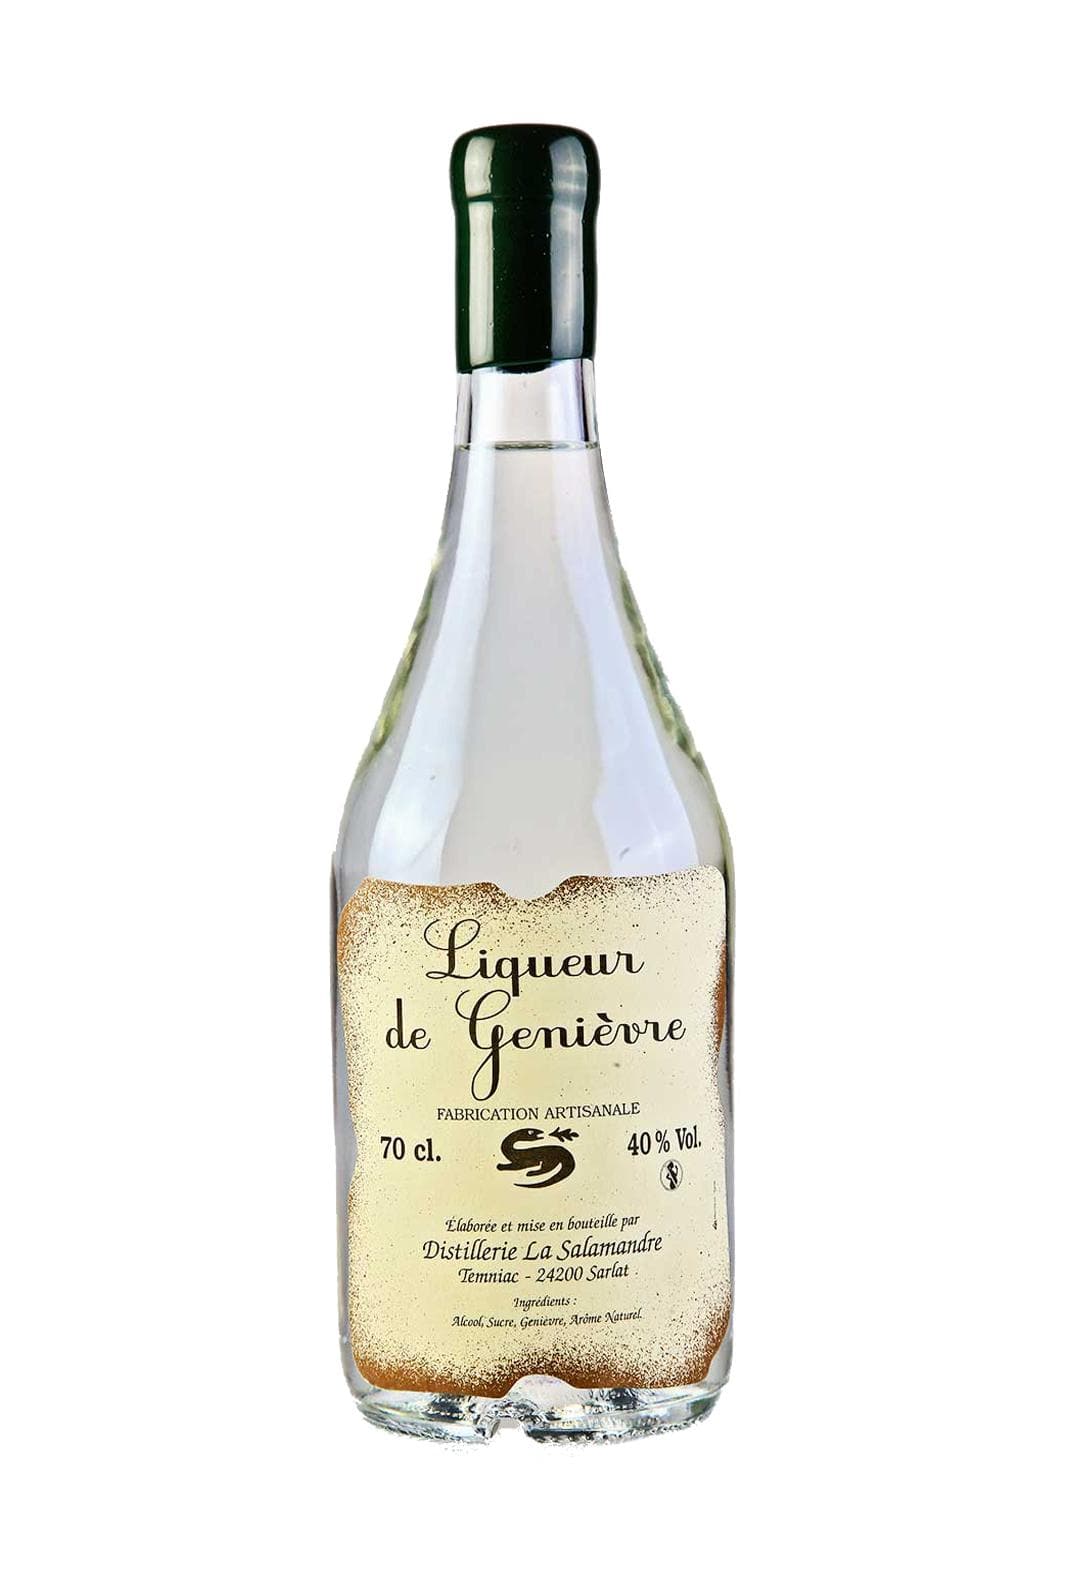 Salamandre Liqueur de Genievre (Juniper) 40% 700ml | Liqueurs | Shop online at Spirits of France